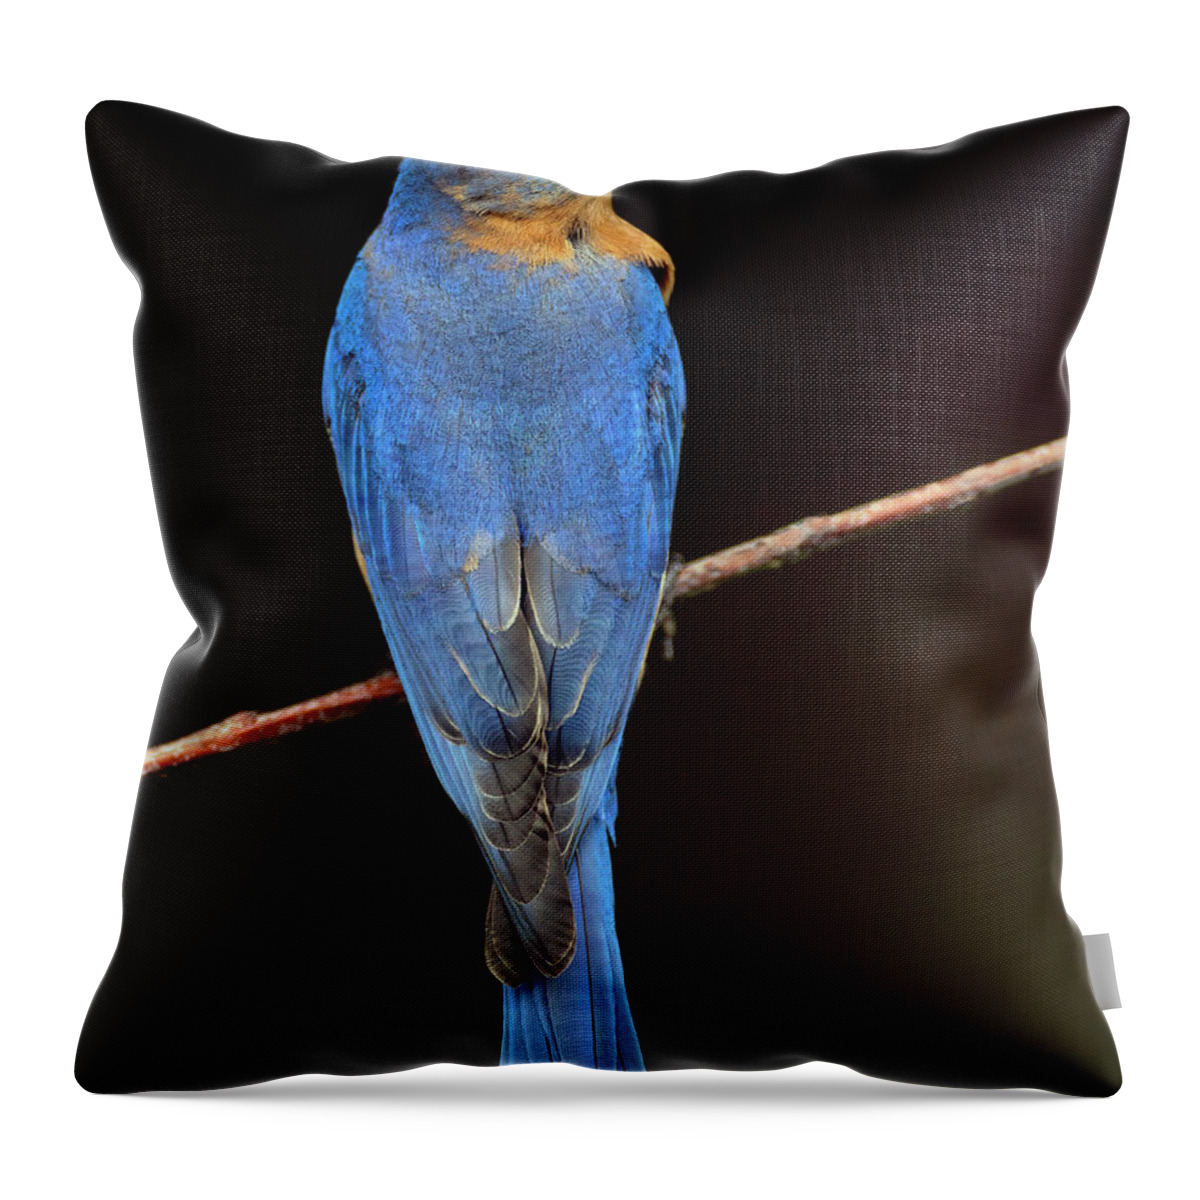 Bird Throw Pillow featuring the photograph Backyard Bluebird by Art Cole